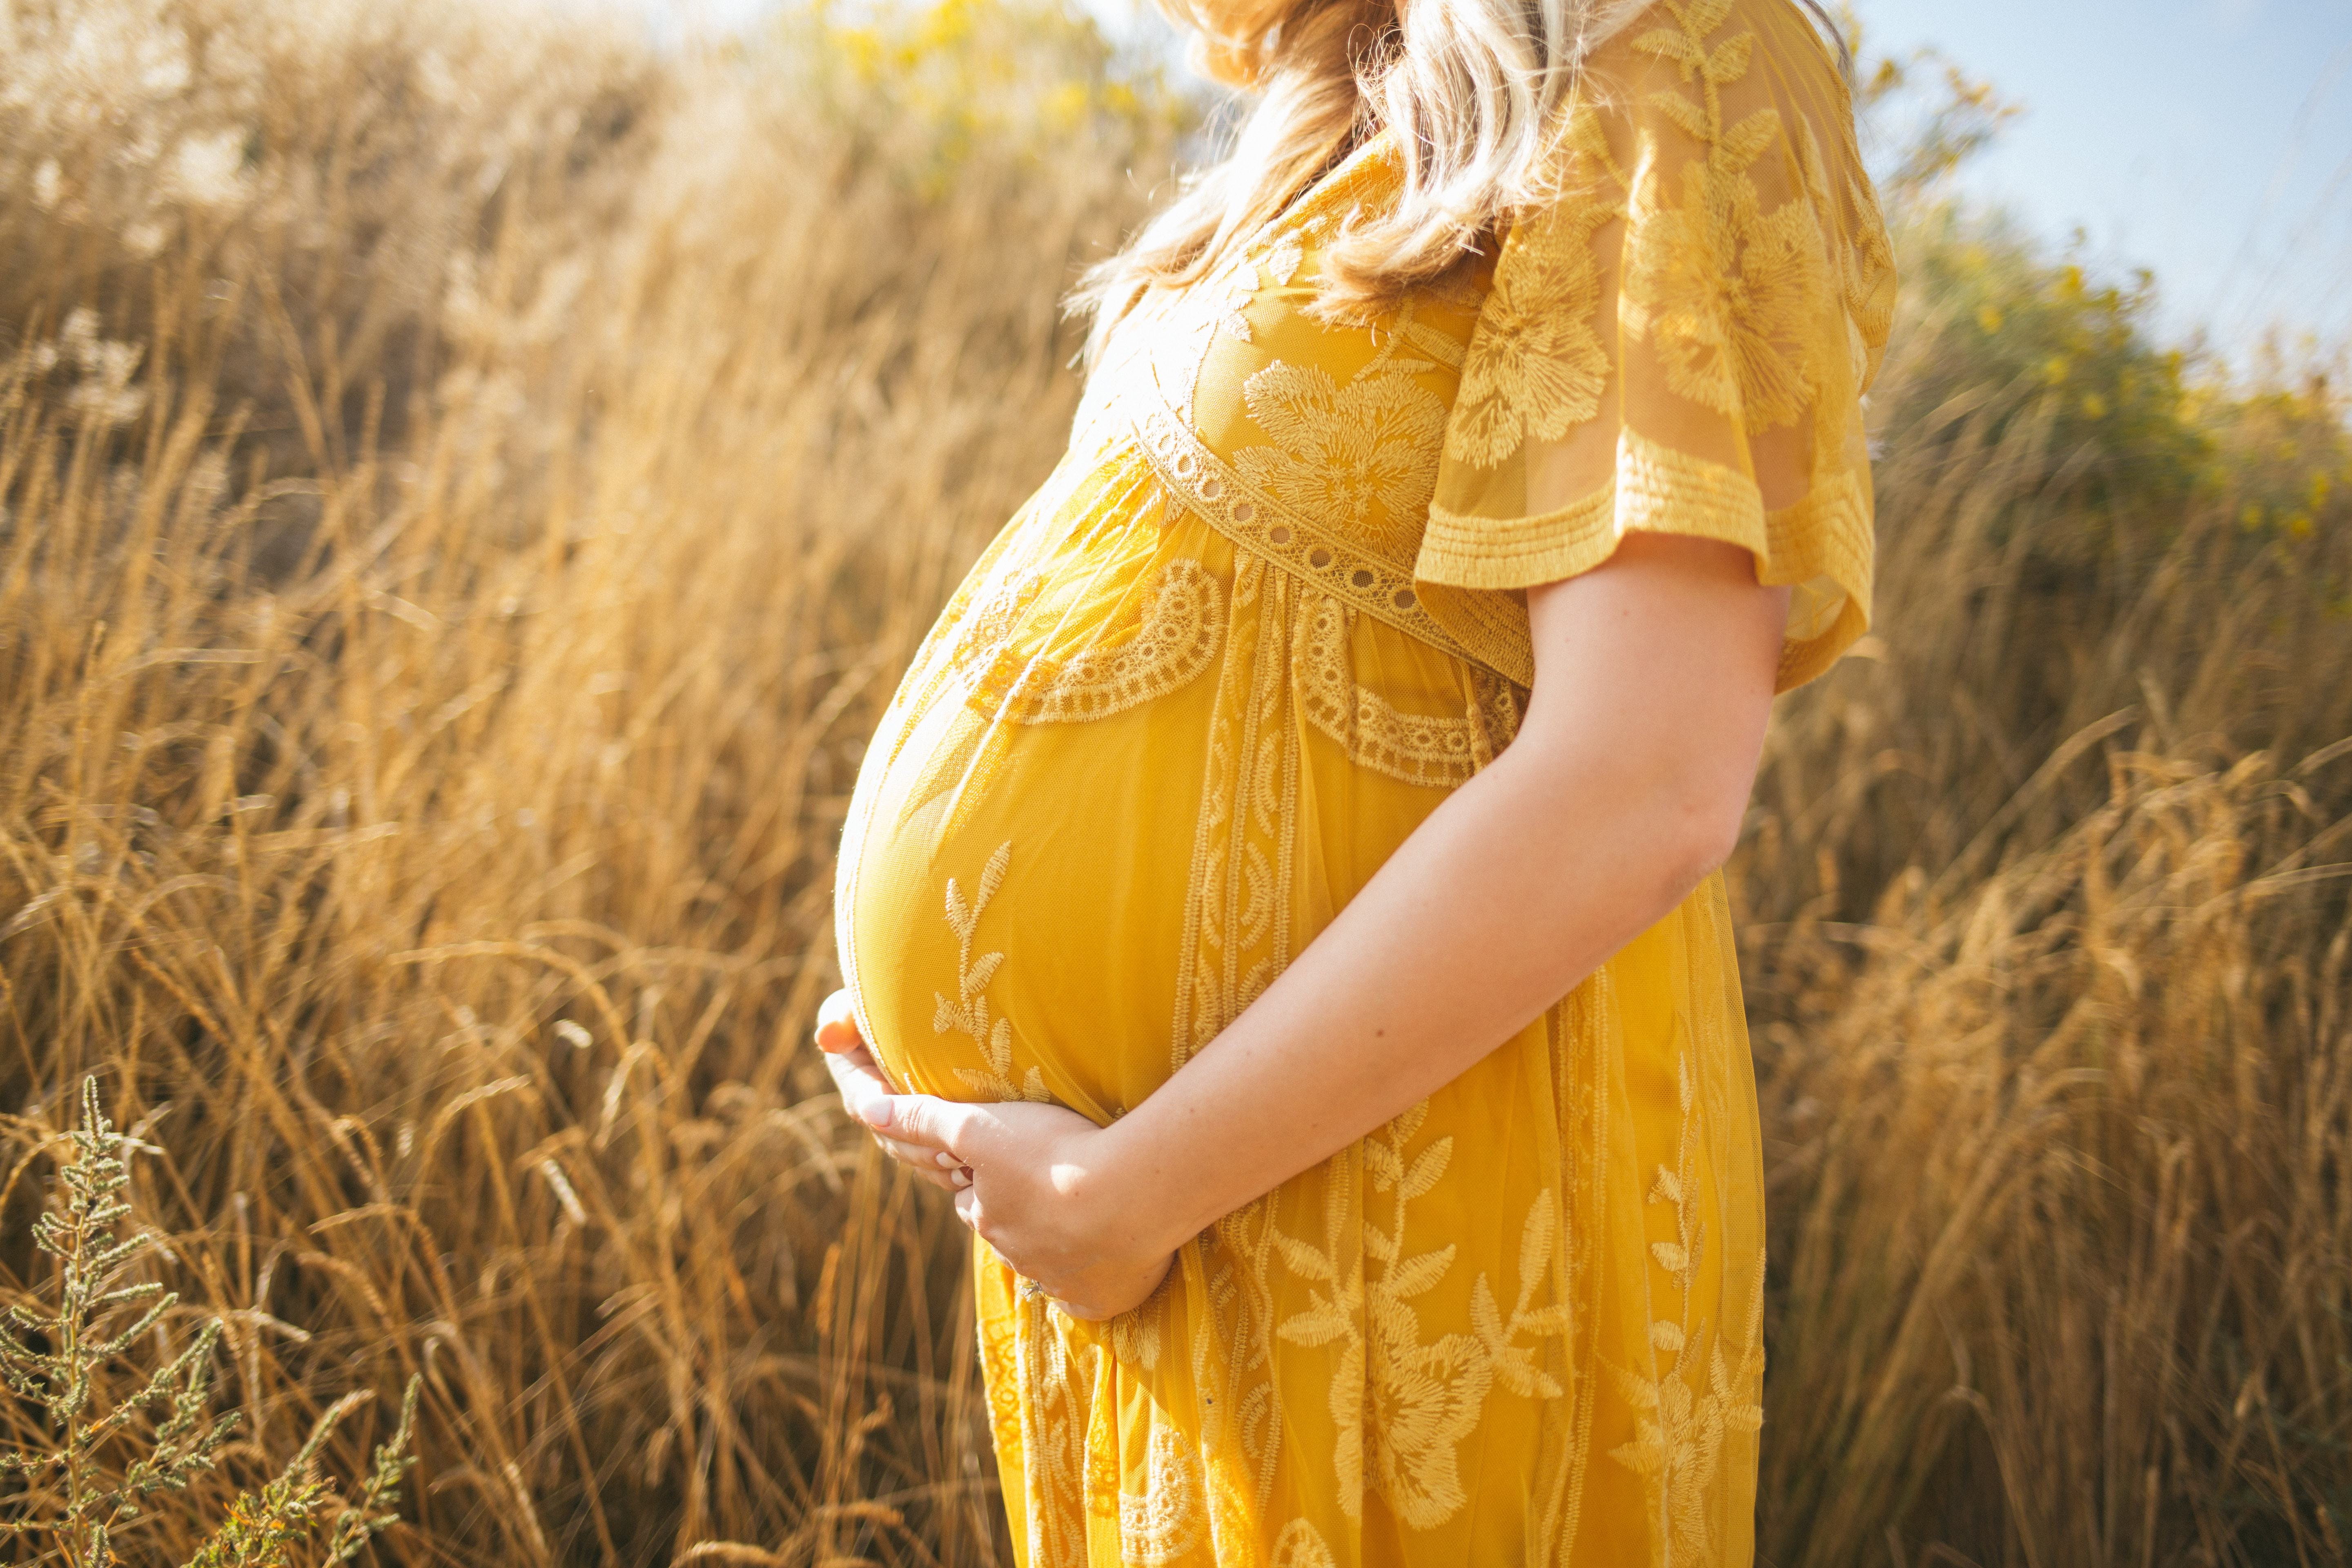 7 LAŽNIH ALARMA ZA POBAČAJ: Svaka trudnica se uplaši ako ih osjeti u prvim mjesecima, ali nema mjesta panici